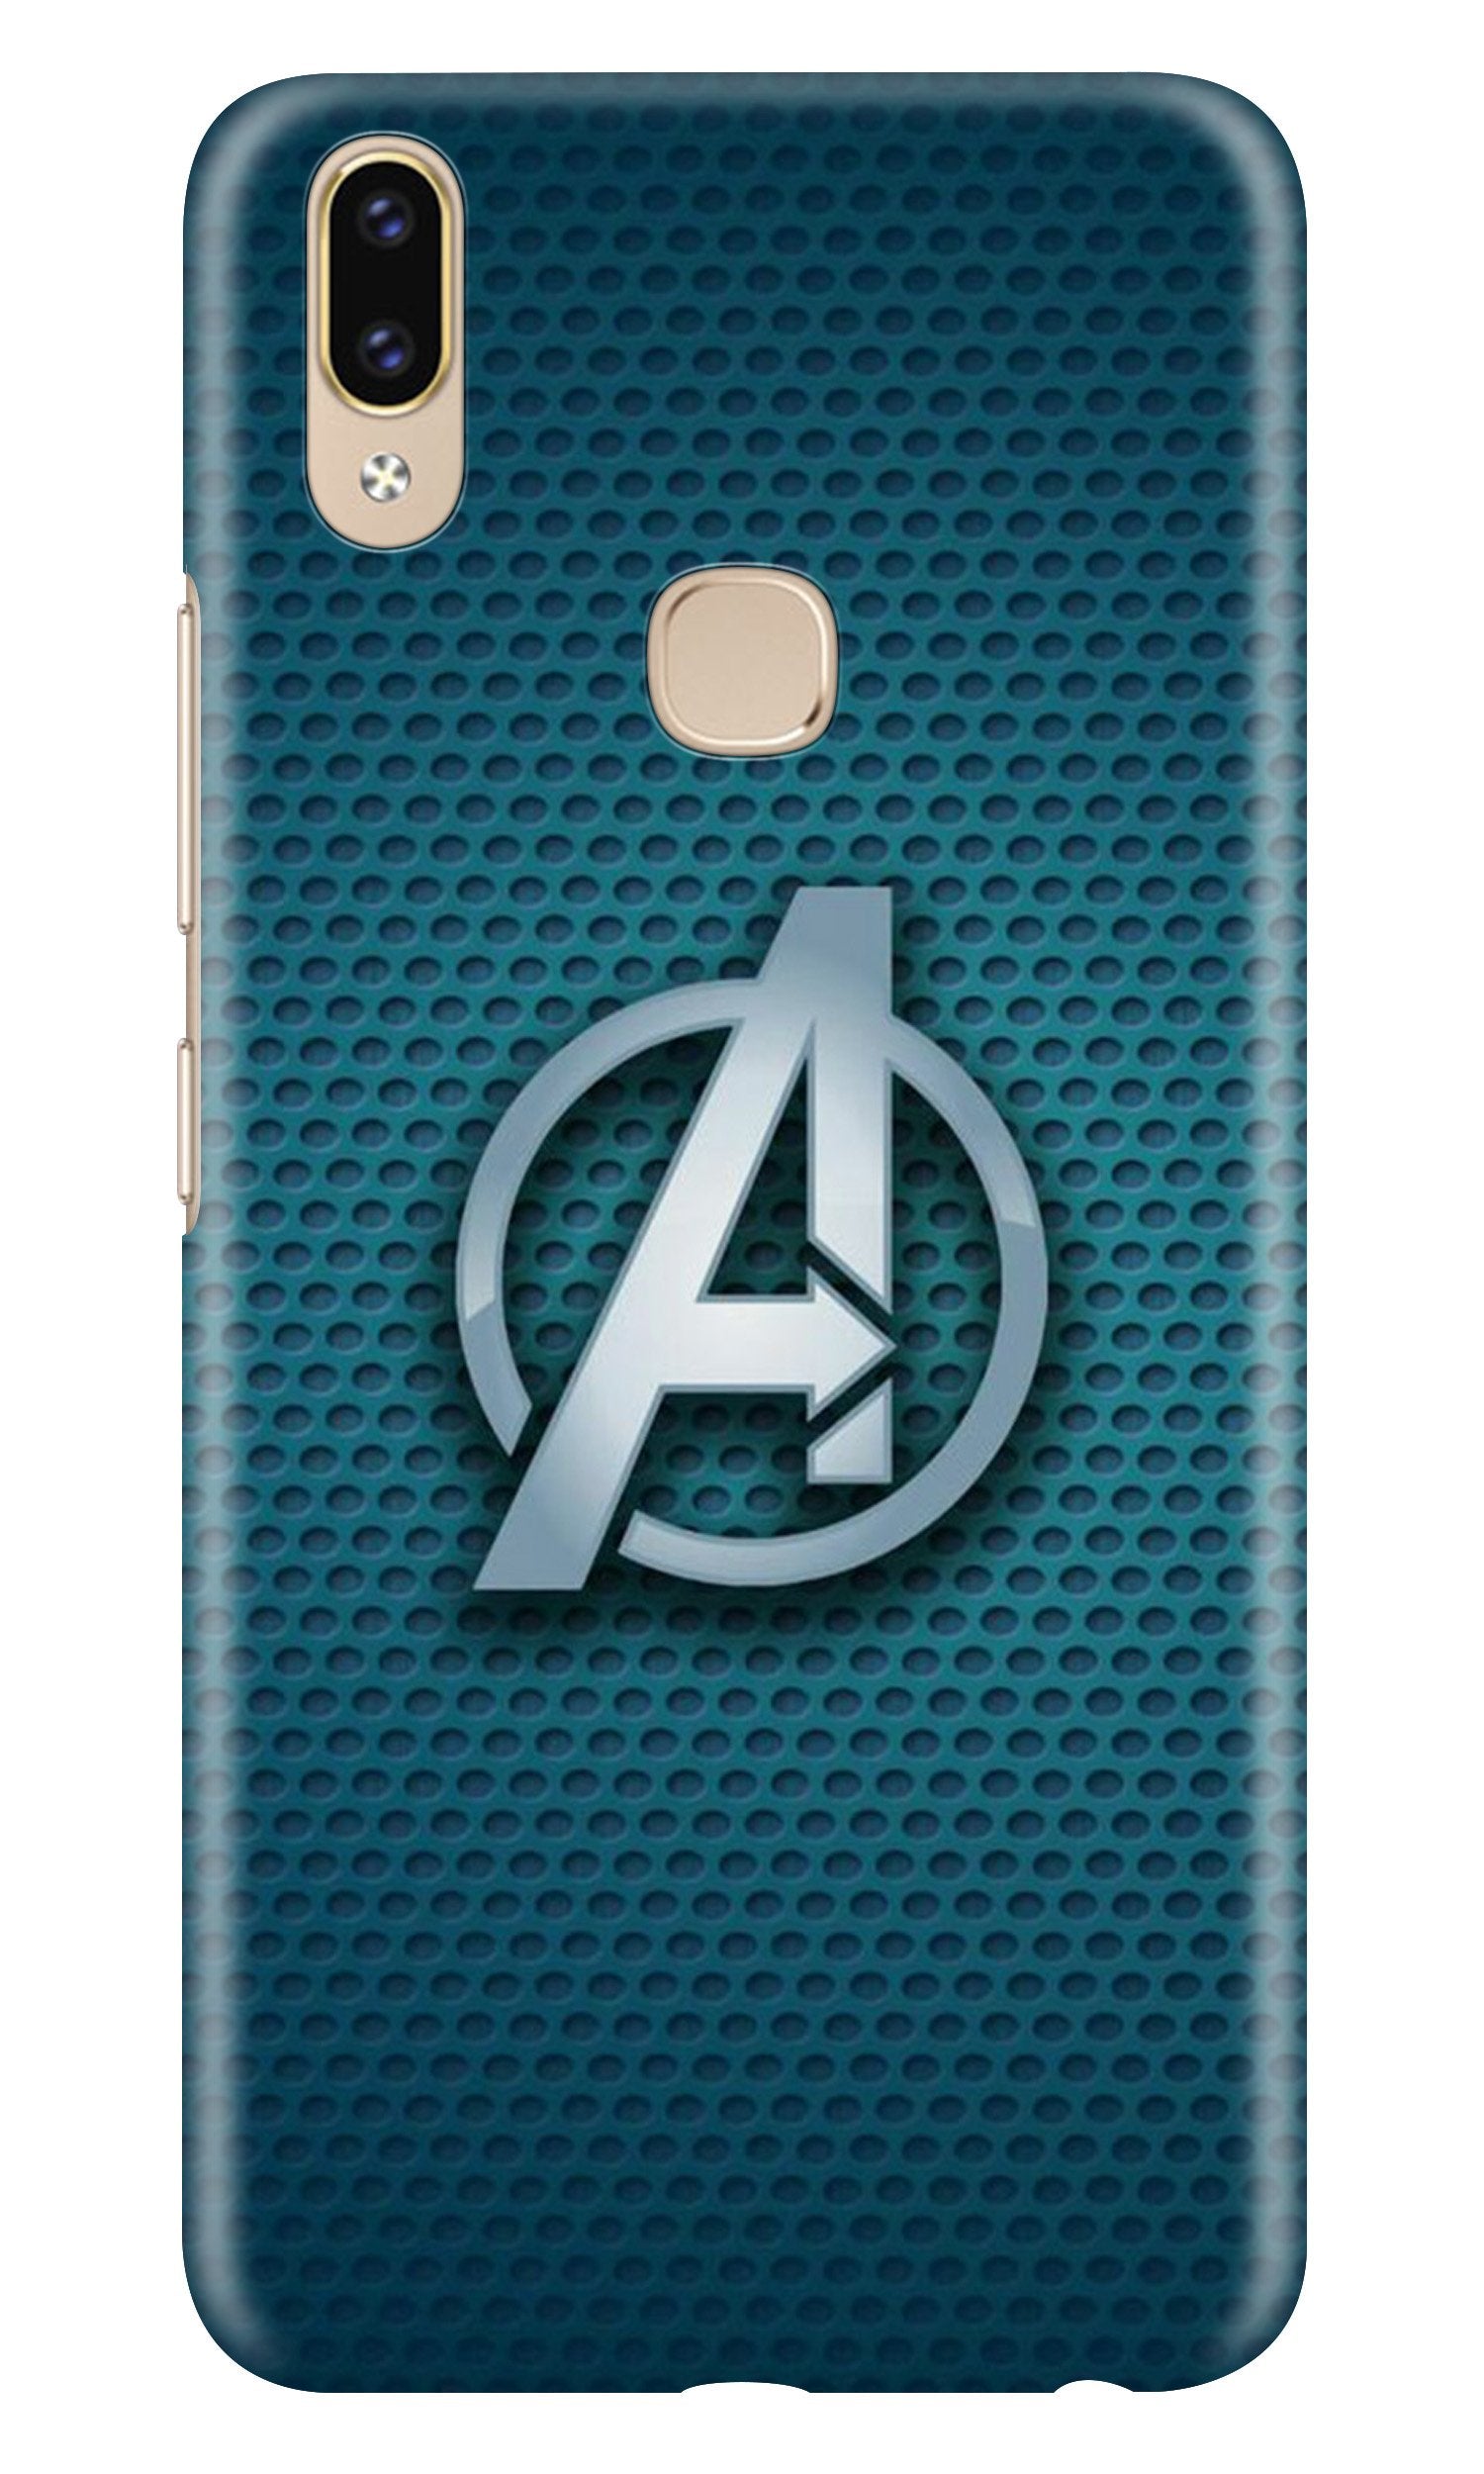 Avengers Case for Zenfone 5z (Design No. 246)